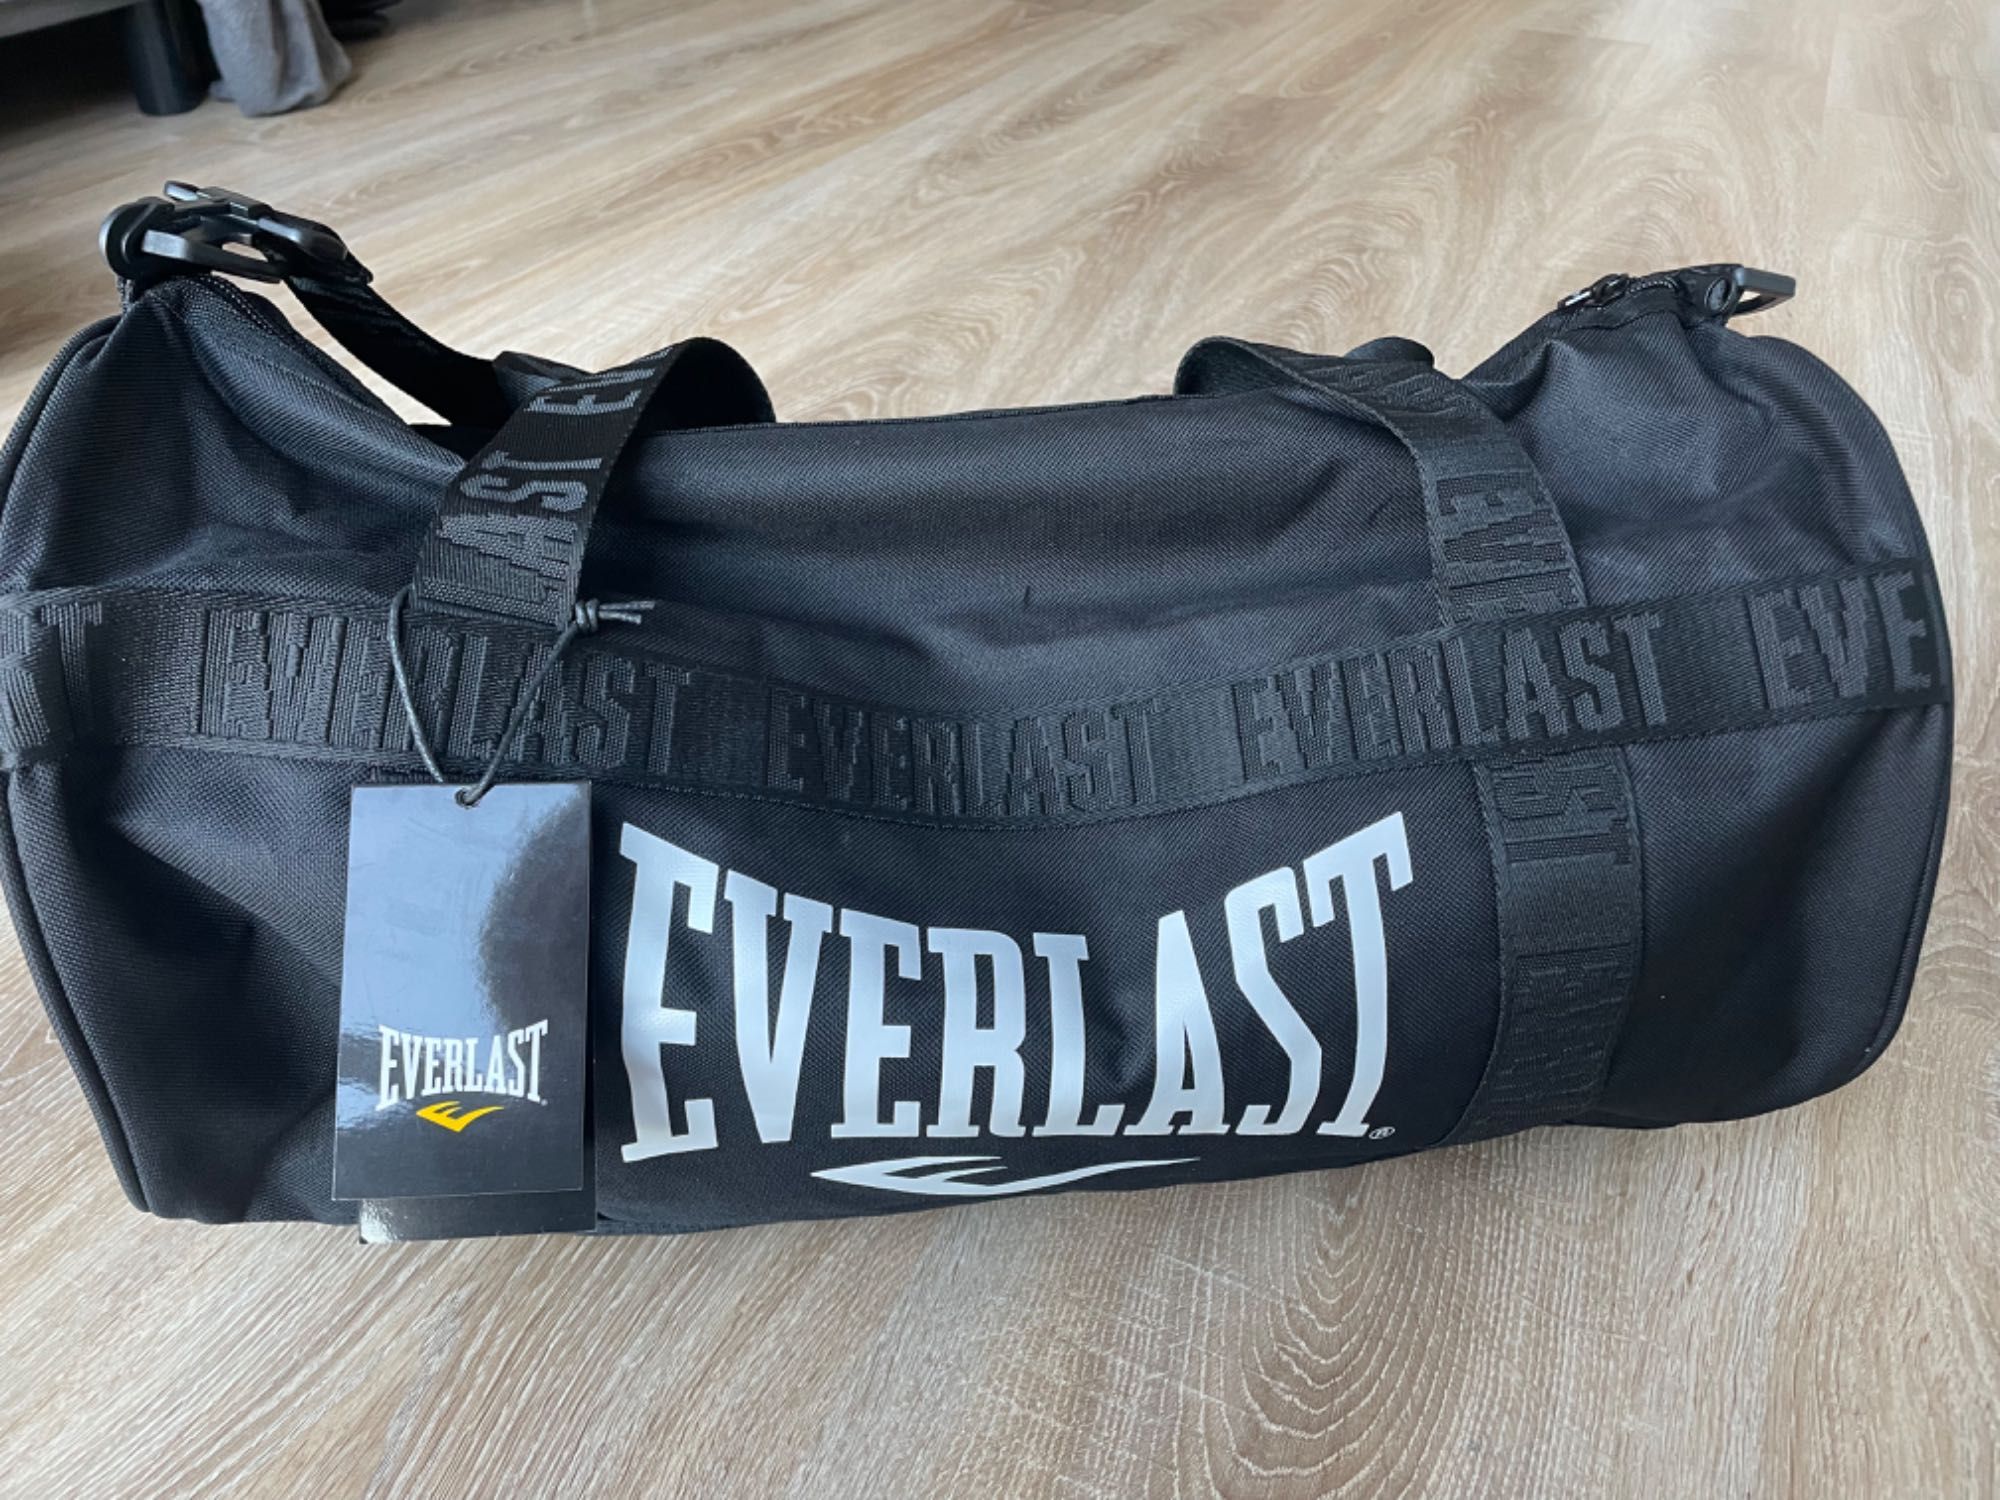 Сумка Everlast для зала та подорожей оригінал